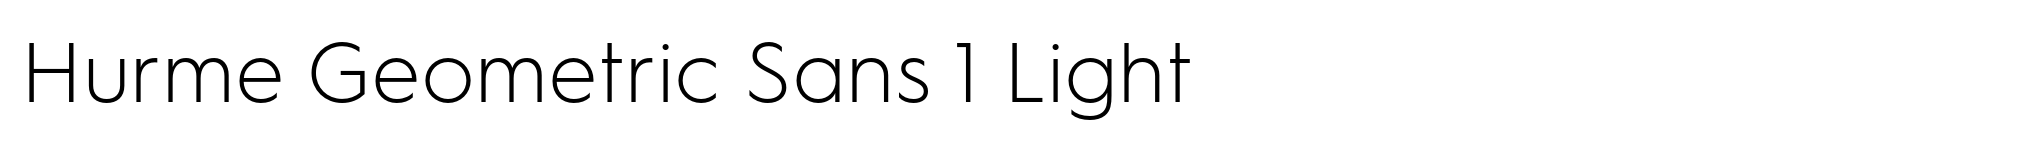 Hurme Geometric Sans 1 Light image